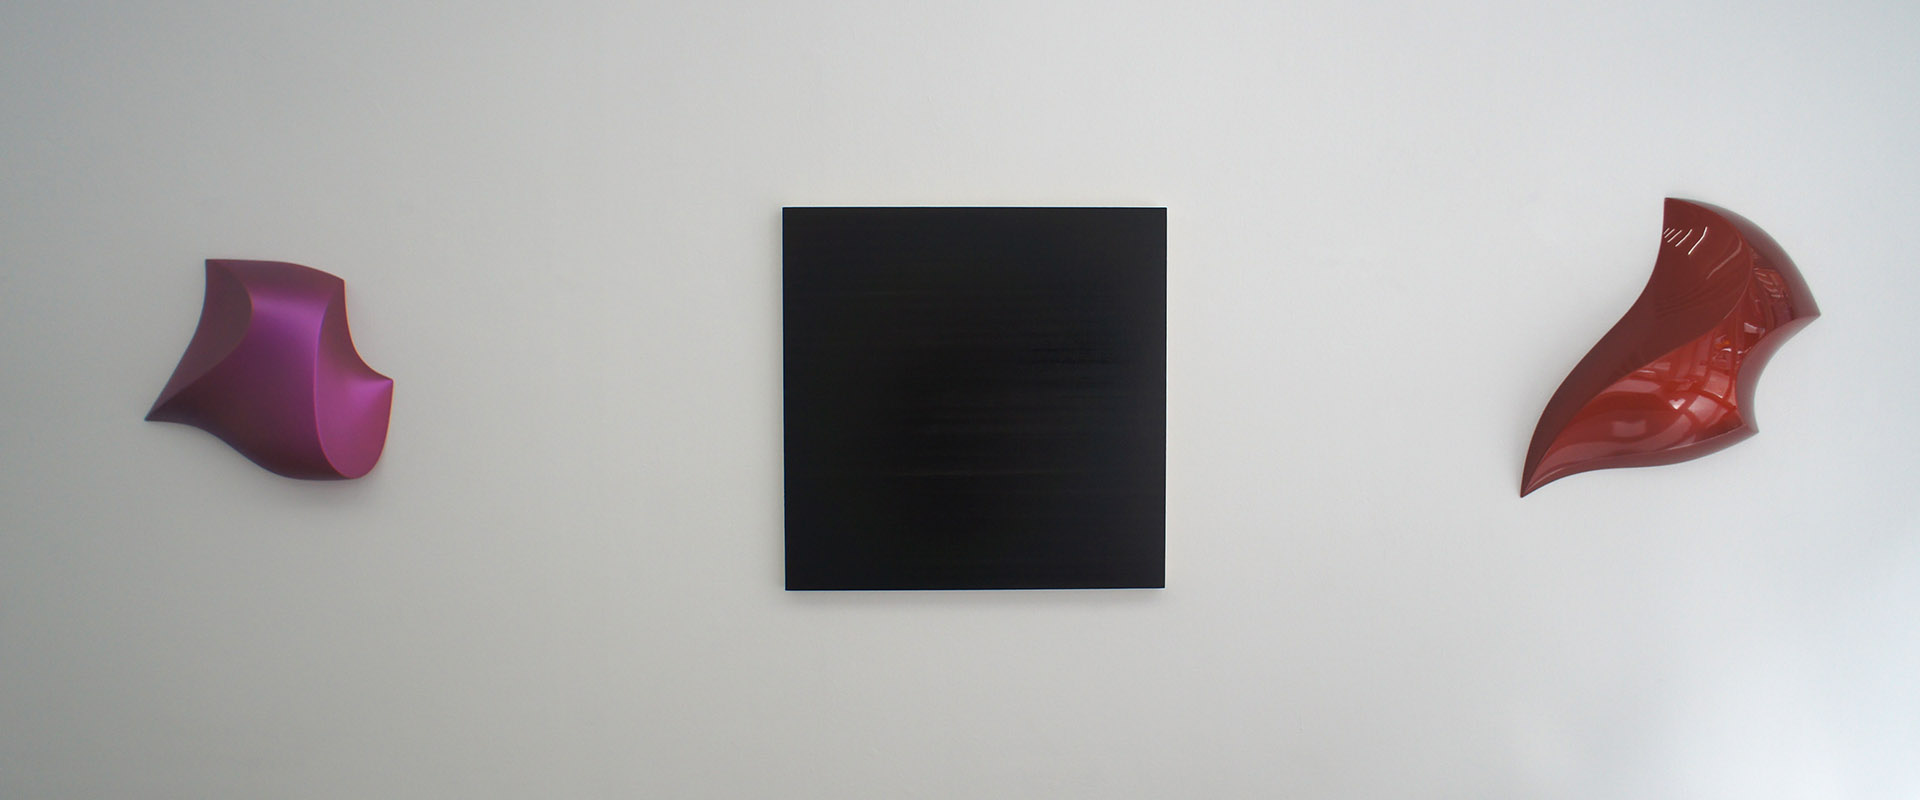 Ausstellungsansicht "After Image. Maria Lalić - Bill Thompson", Galerie Renate Bender 2017